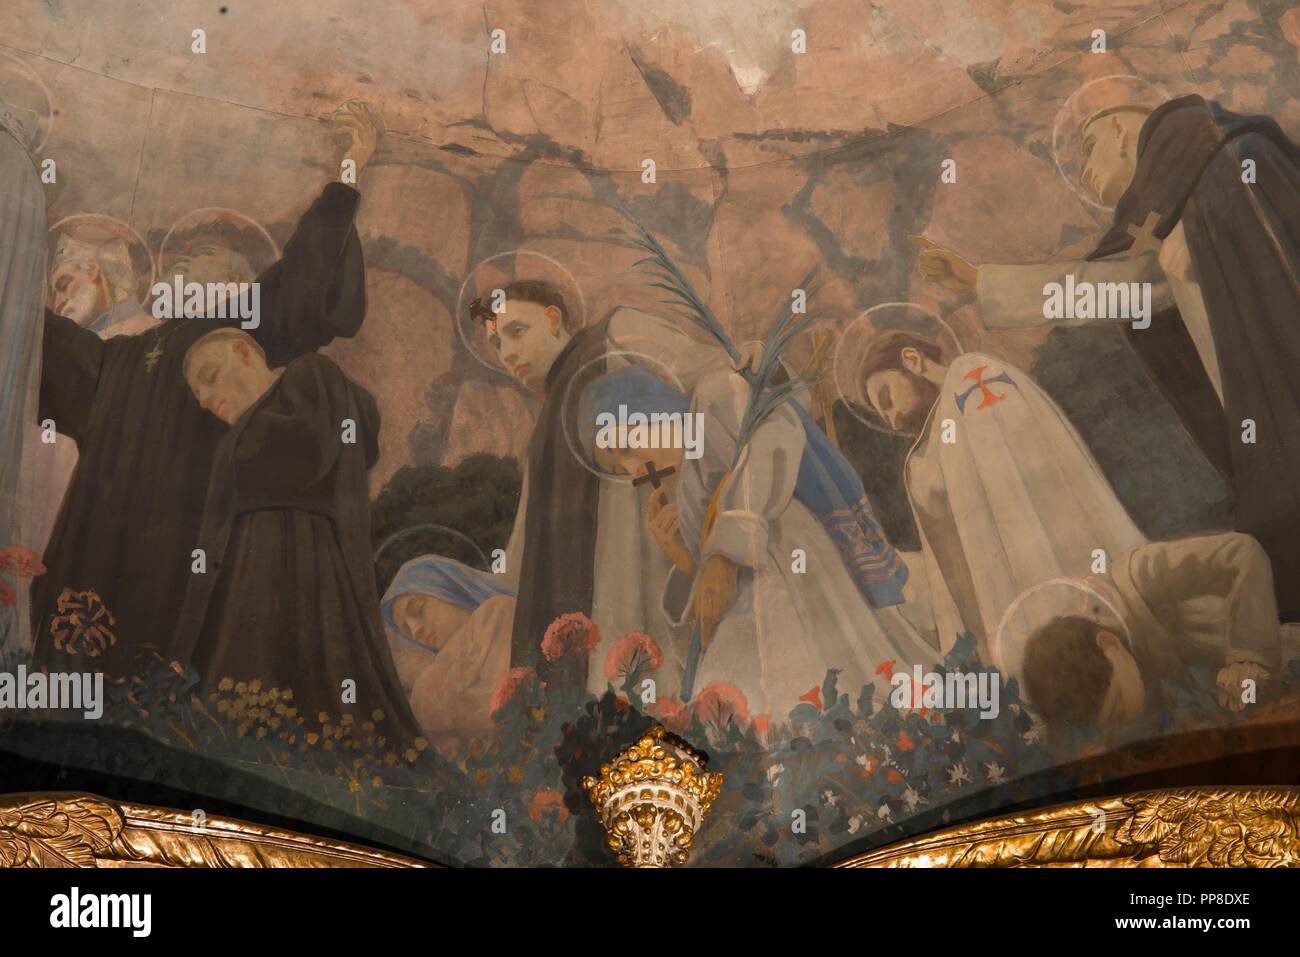 Detalle del Apoteosis de la Virgen, 1896-1898. Pintura mural de la cúpula del cambril de la Virgen. Monasterio de Montserrat. Cataluña. Author: LLIMONA, JOAN. Stock Photo